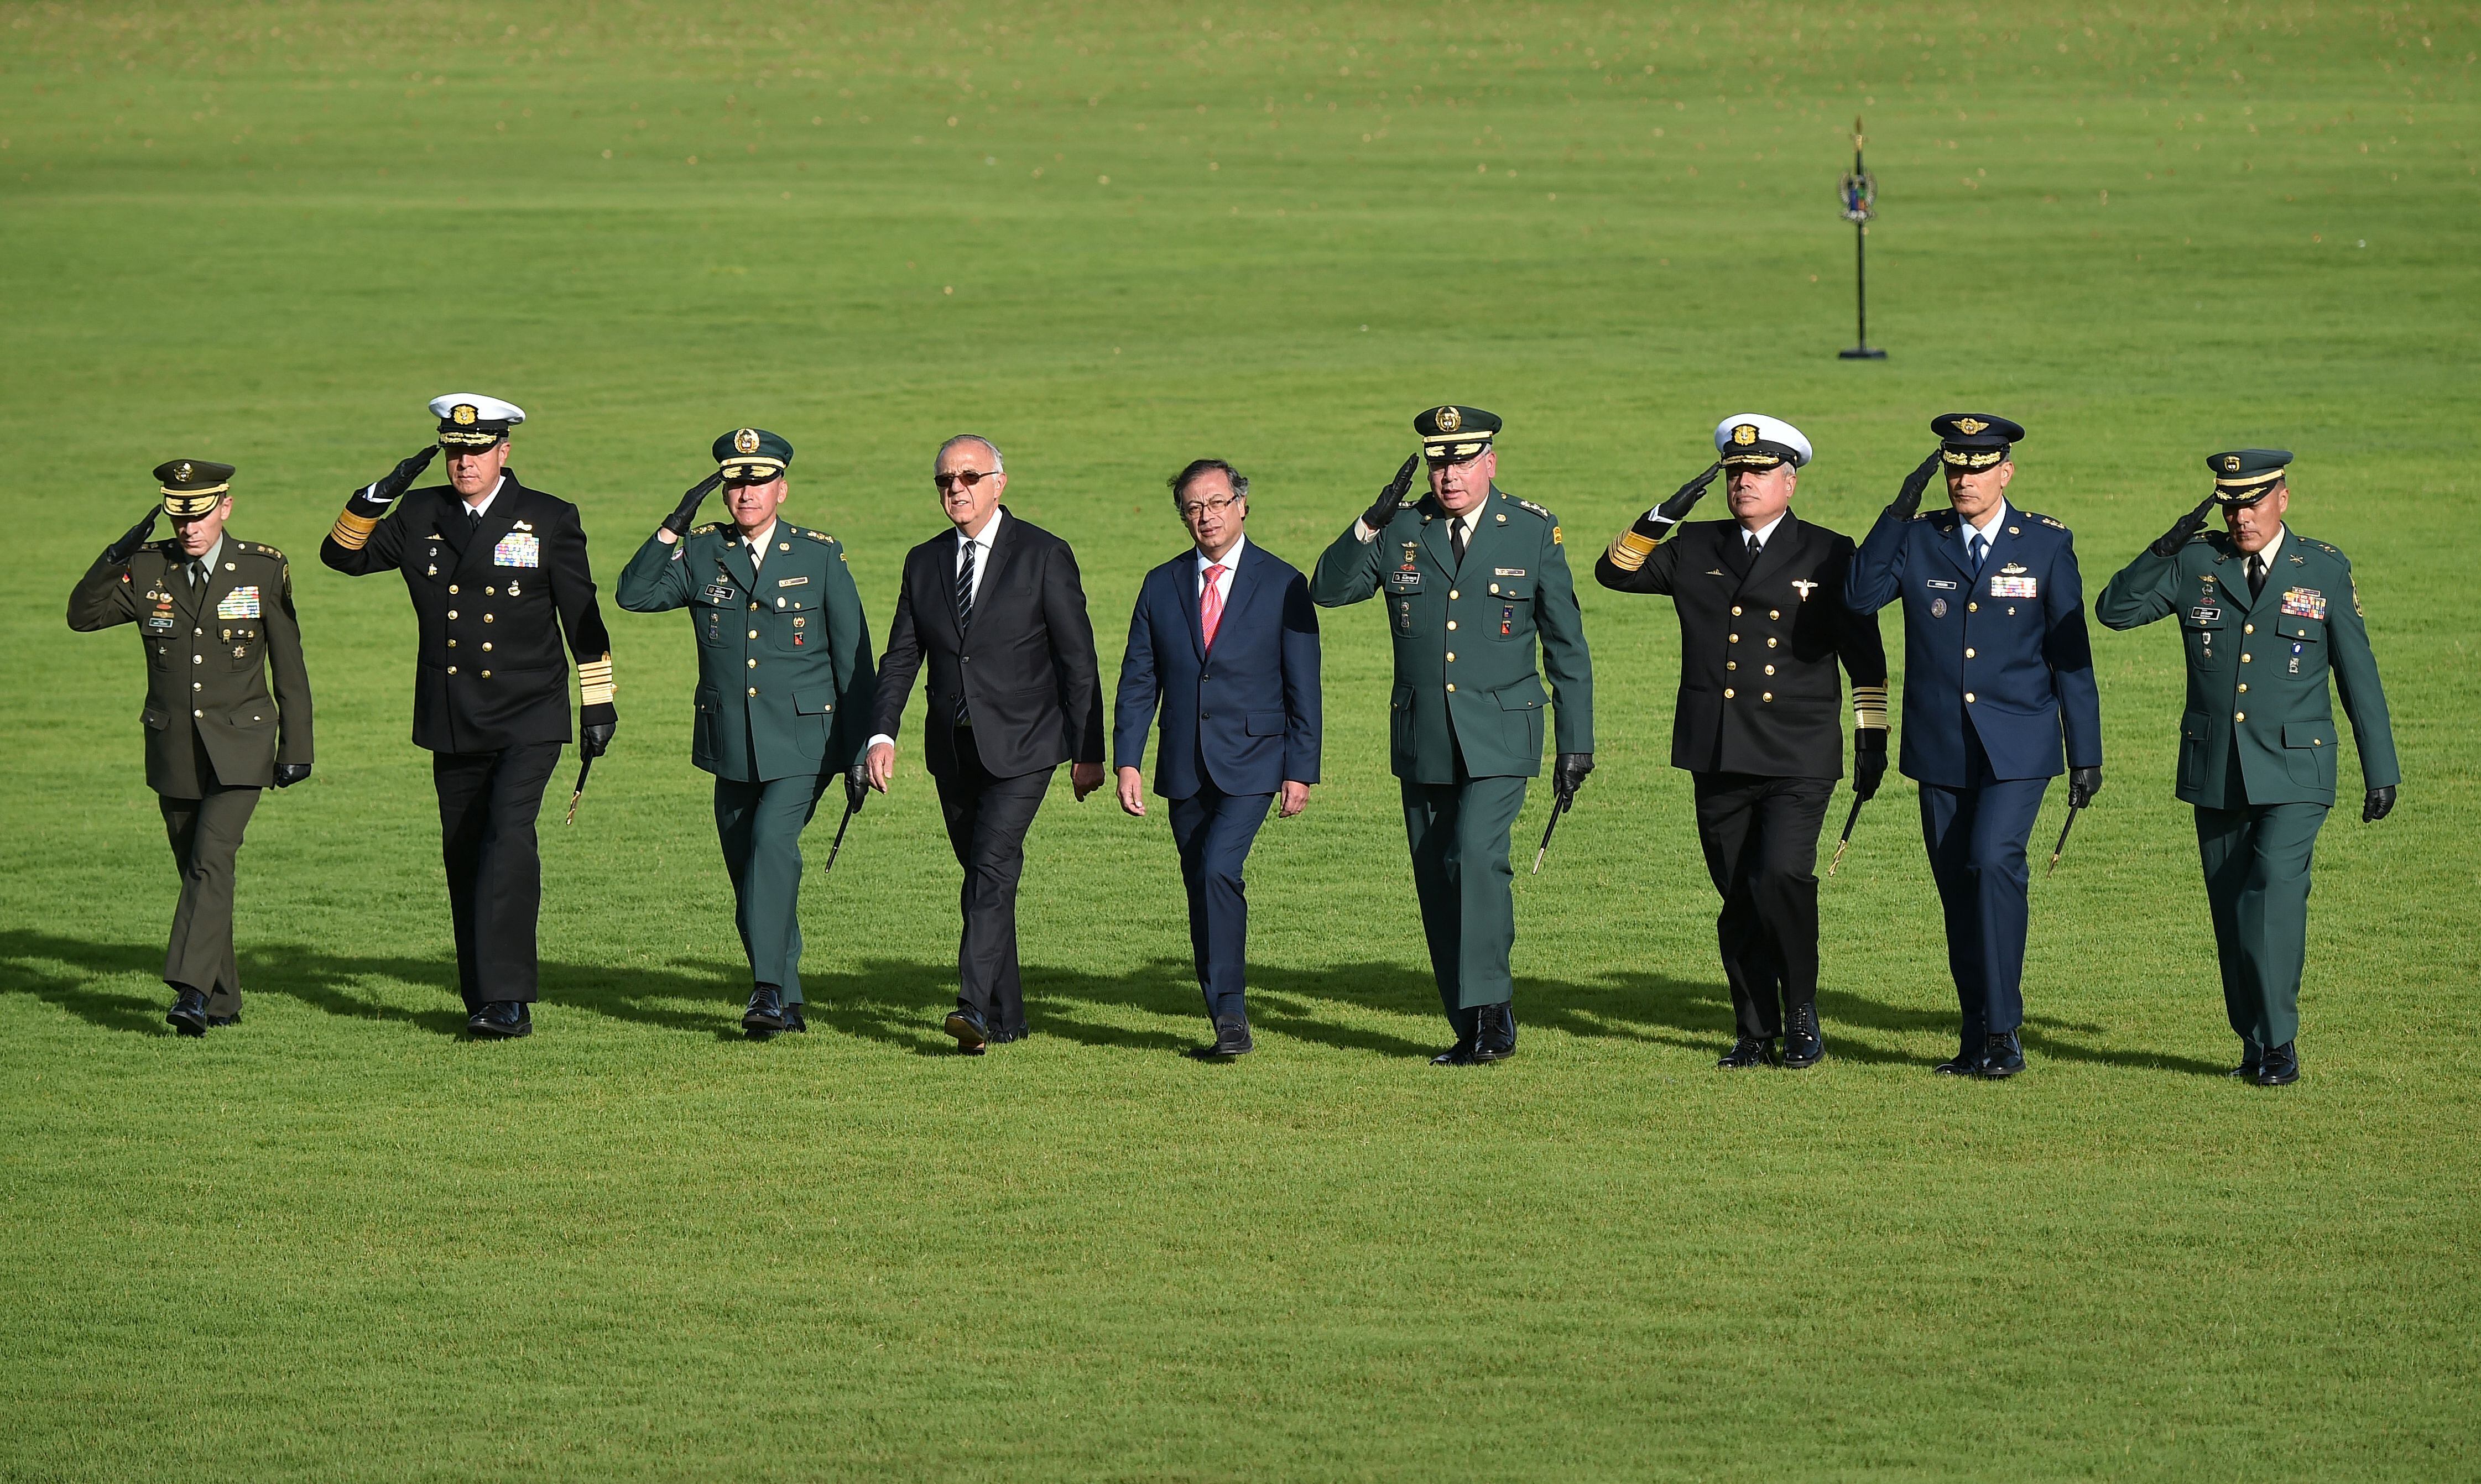 El presidente de Colombia, Gustavo Petro, quien aparecen en el centro de la foto con traje azul, ha intentado avanzar con los acuerdos de paz con los diferentes grupos guerrilleros desde que asumió el poder.